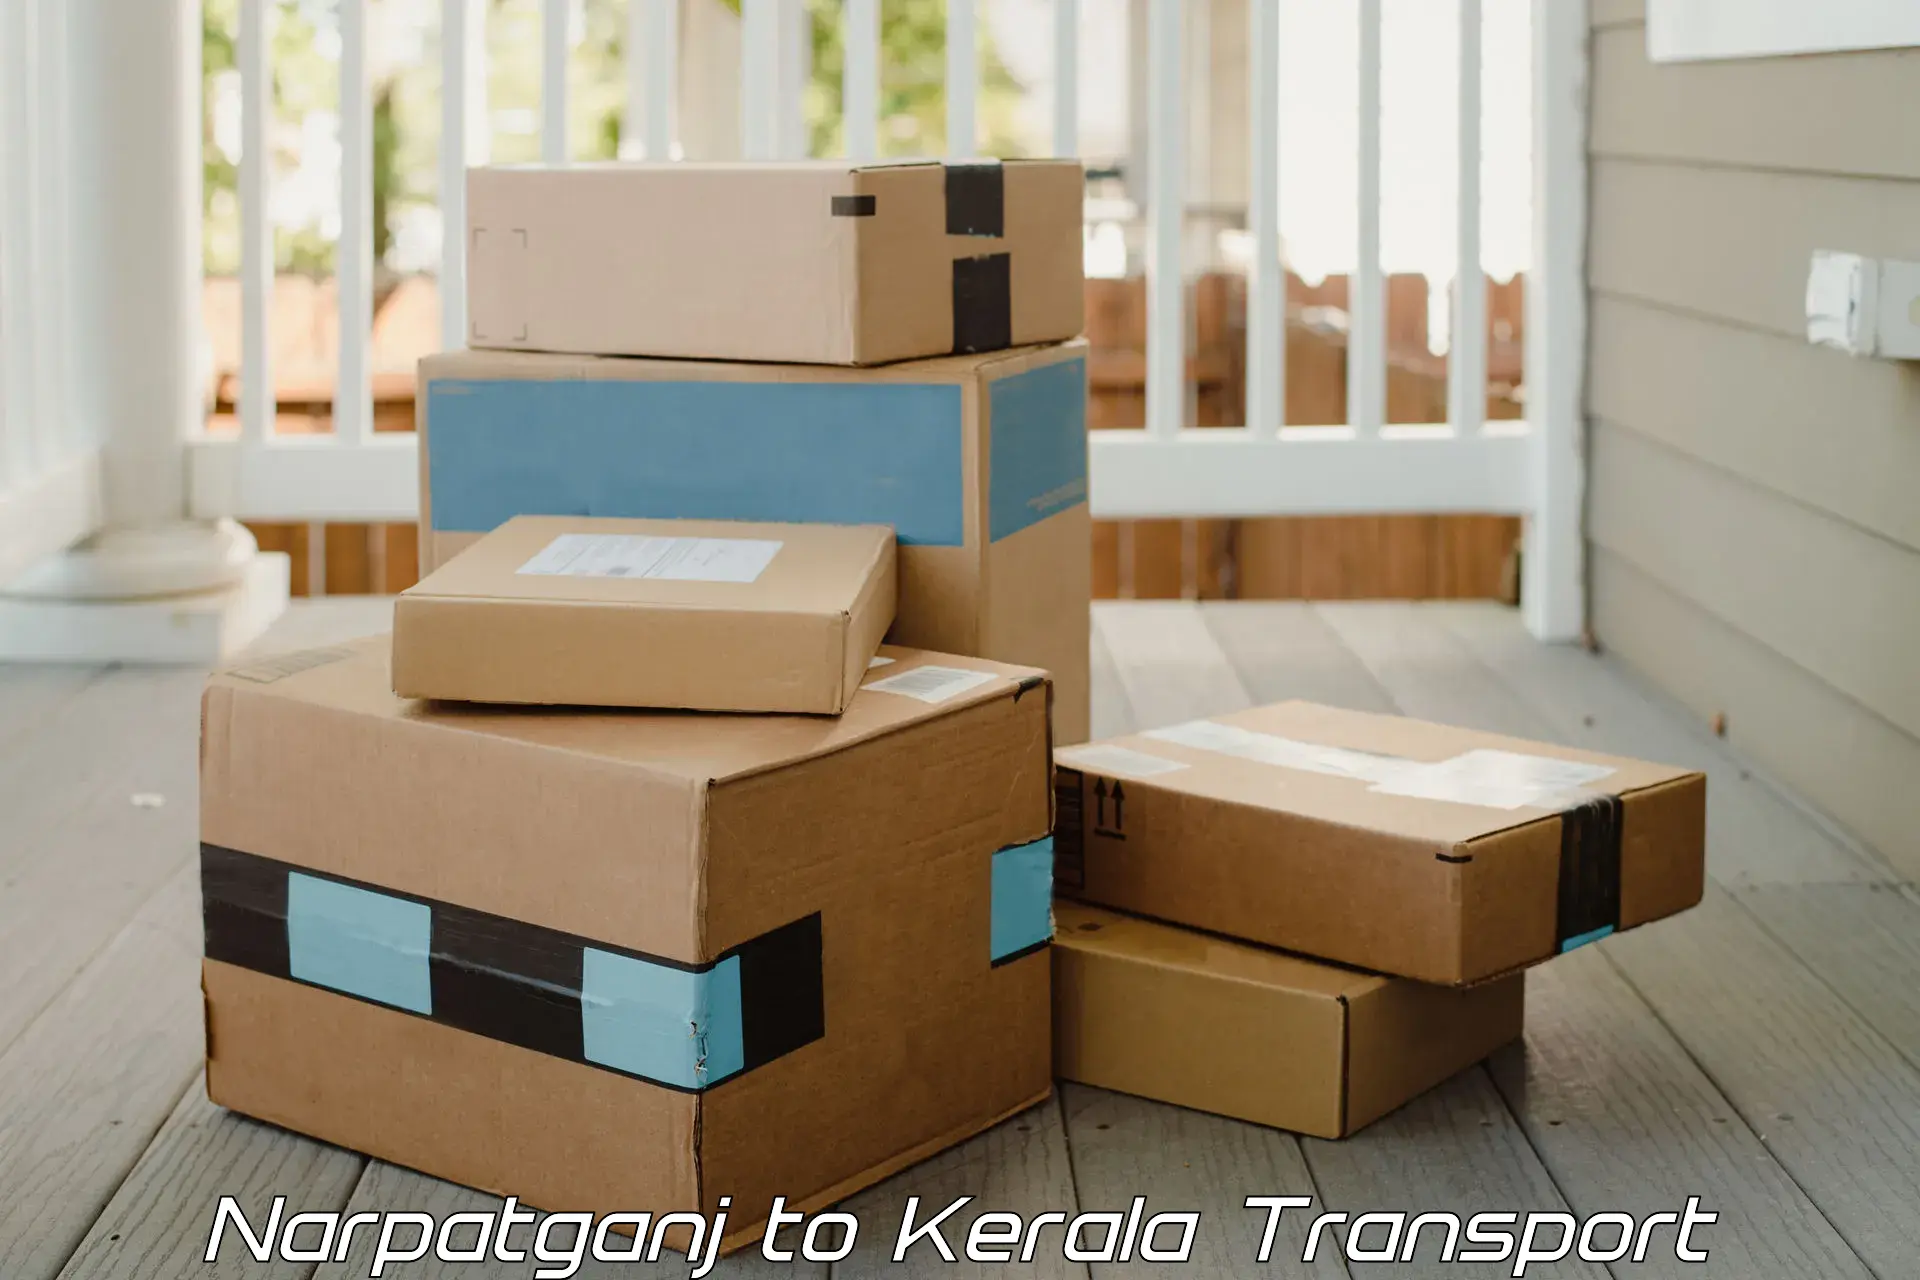 Transport in sharing Narpatganj to Kerala